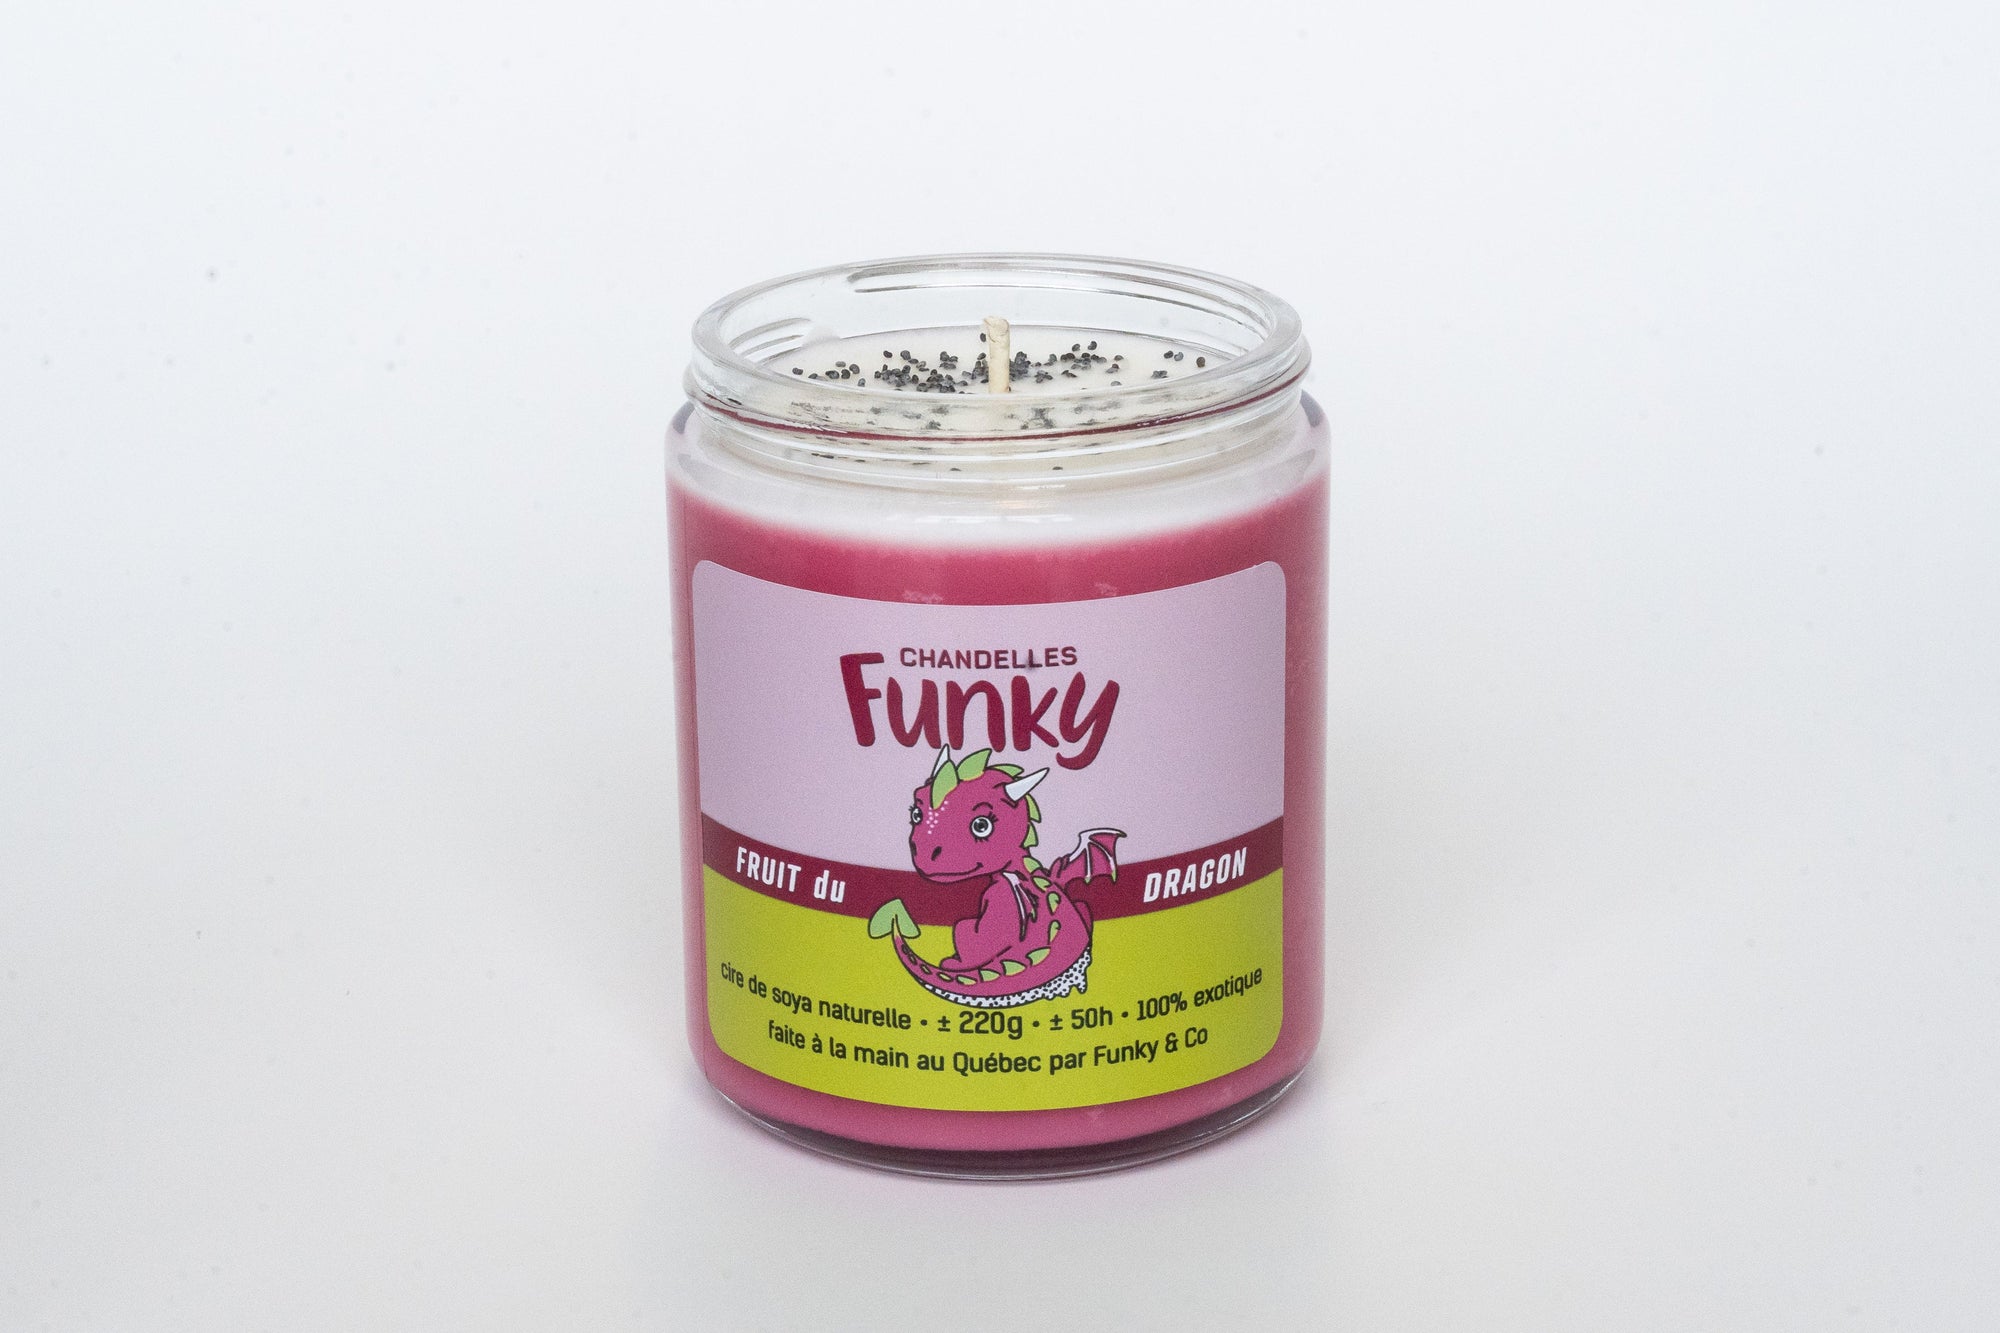 Chandelle Fruit du dragon - Funky - Funky & Co.